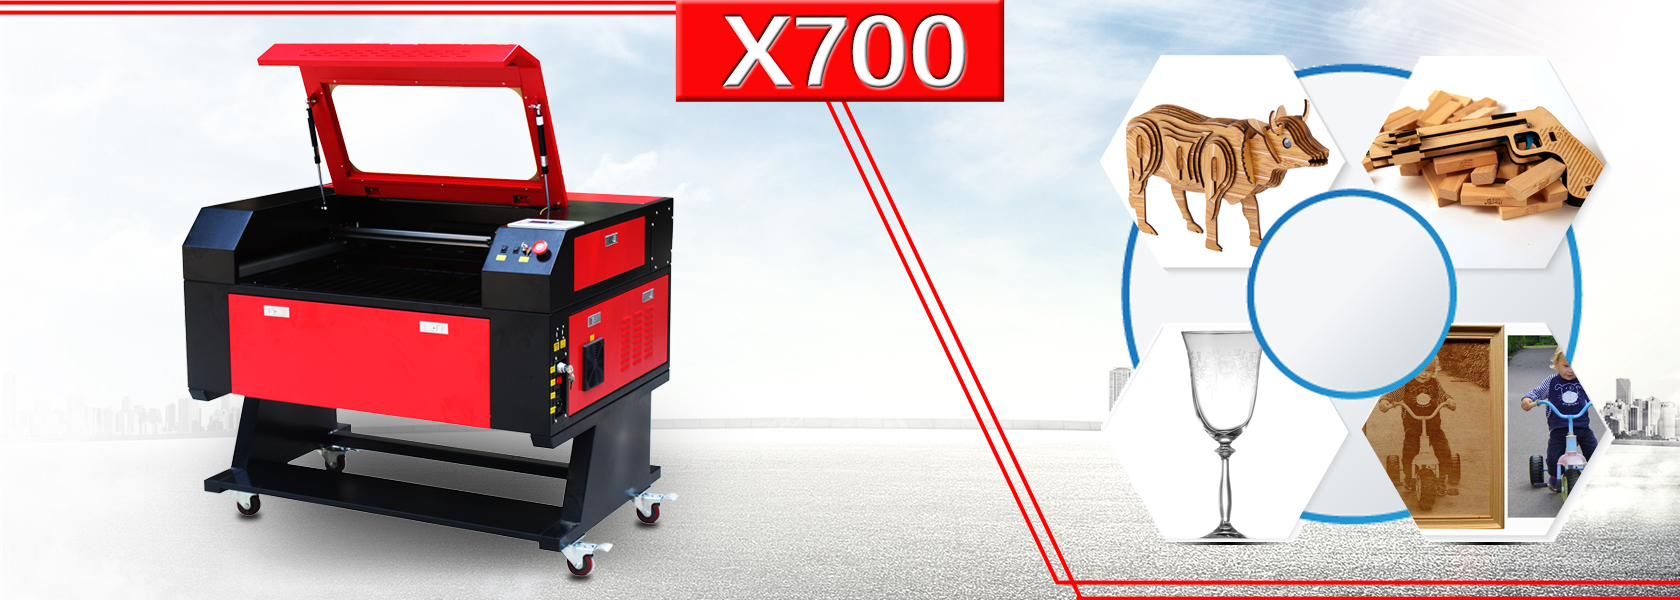 X700 laser engraver machine